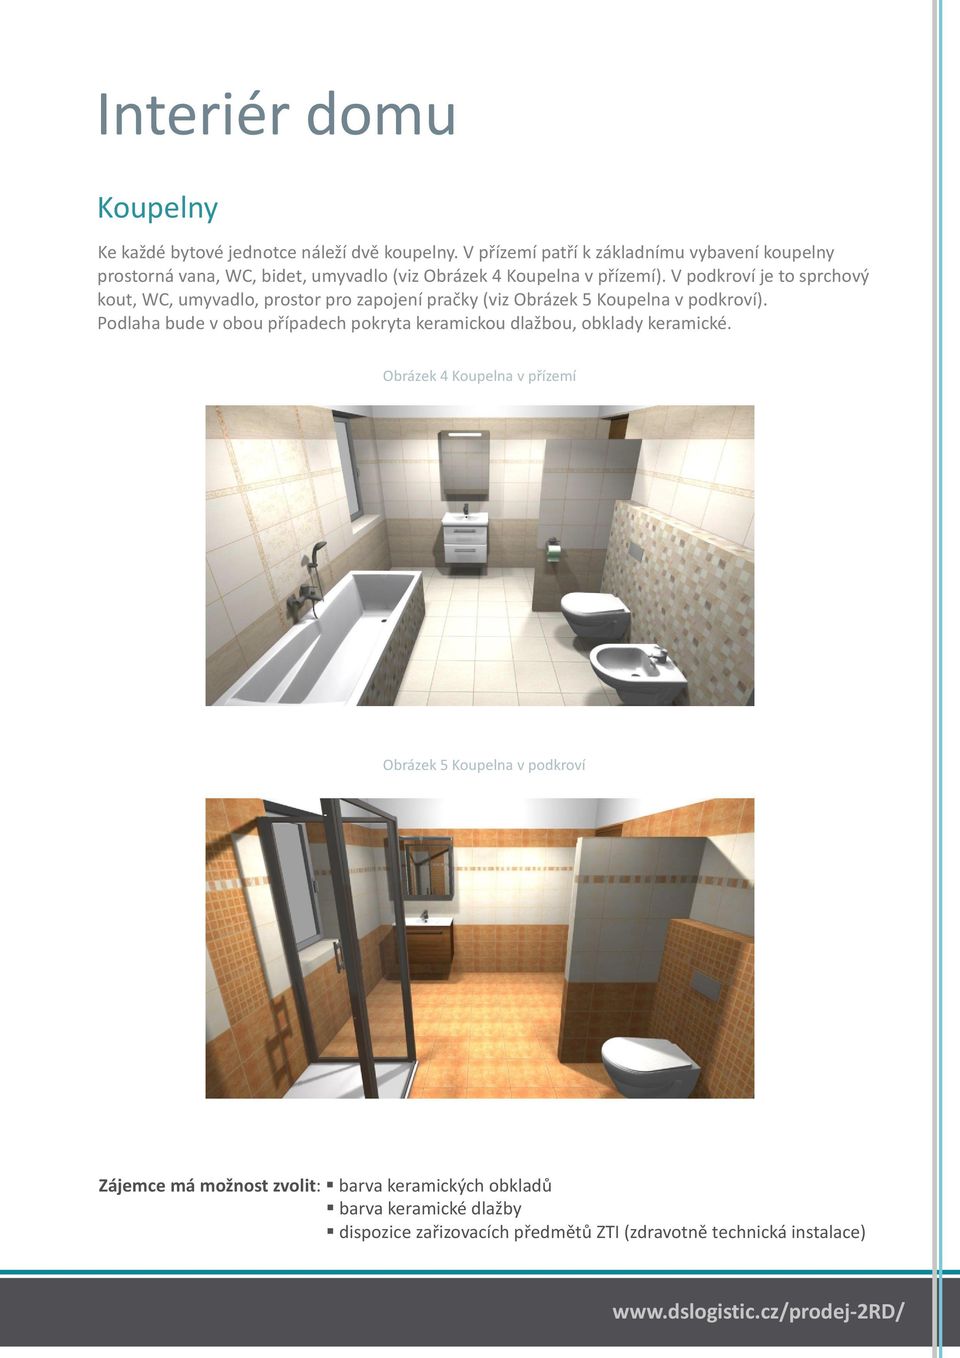 V podkroví je to sprchový kout, WC, umyvadlo, prostor pro zapojení pračky (viz Obrázek 5 Koupelna v podkroví).